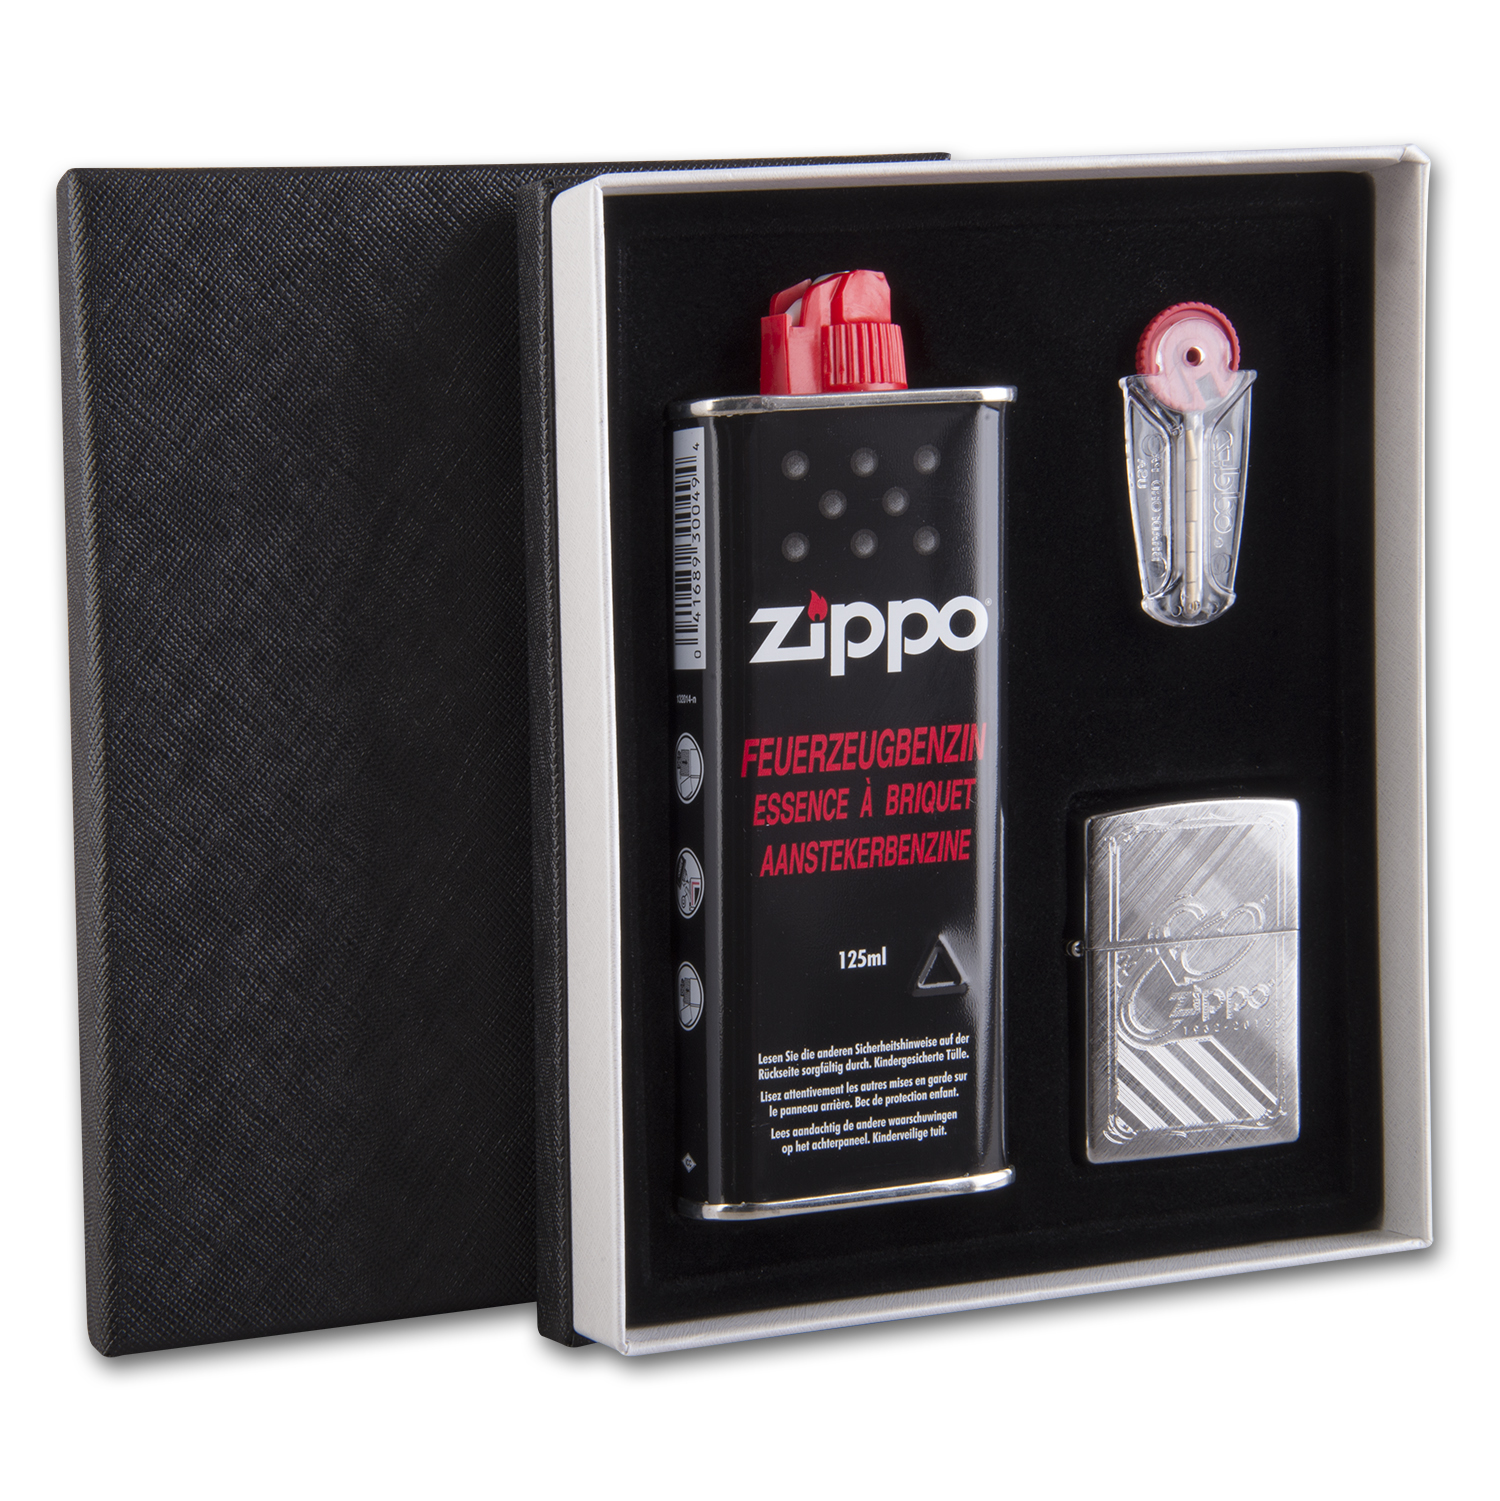 ZIPPO Geschenkbox chrom 80th Anniversary 60002332 mit Steine und Benzi